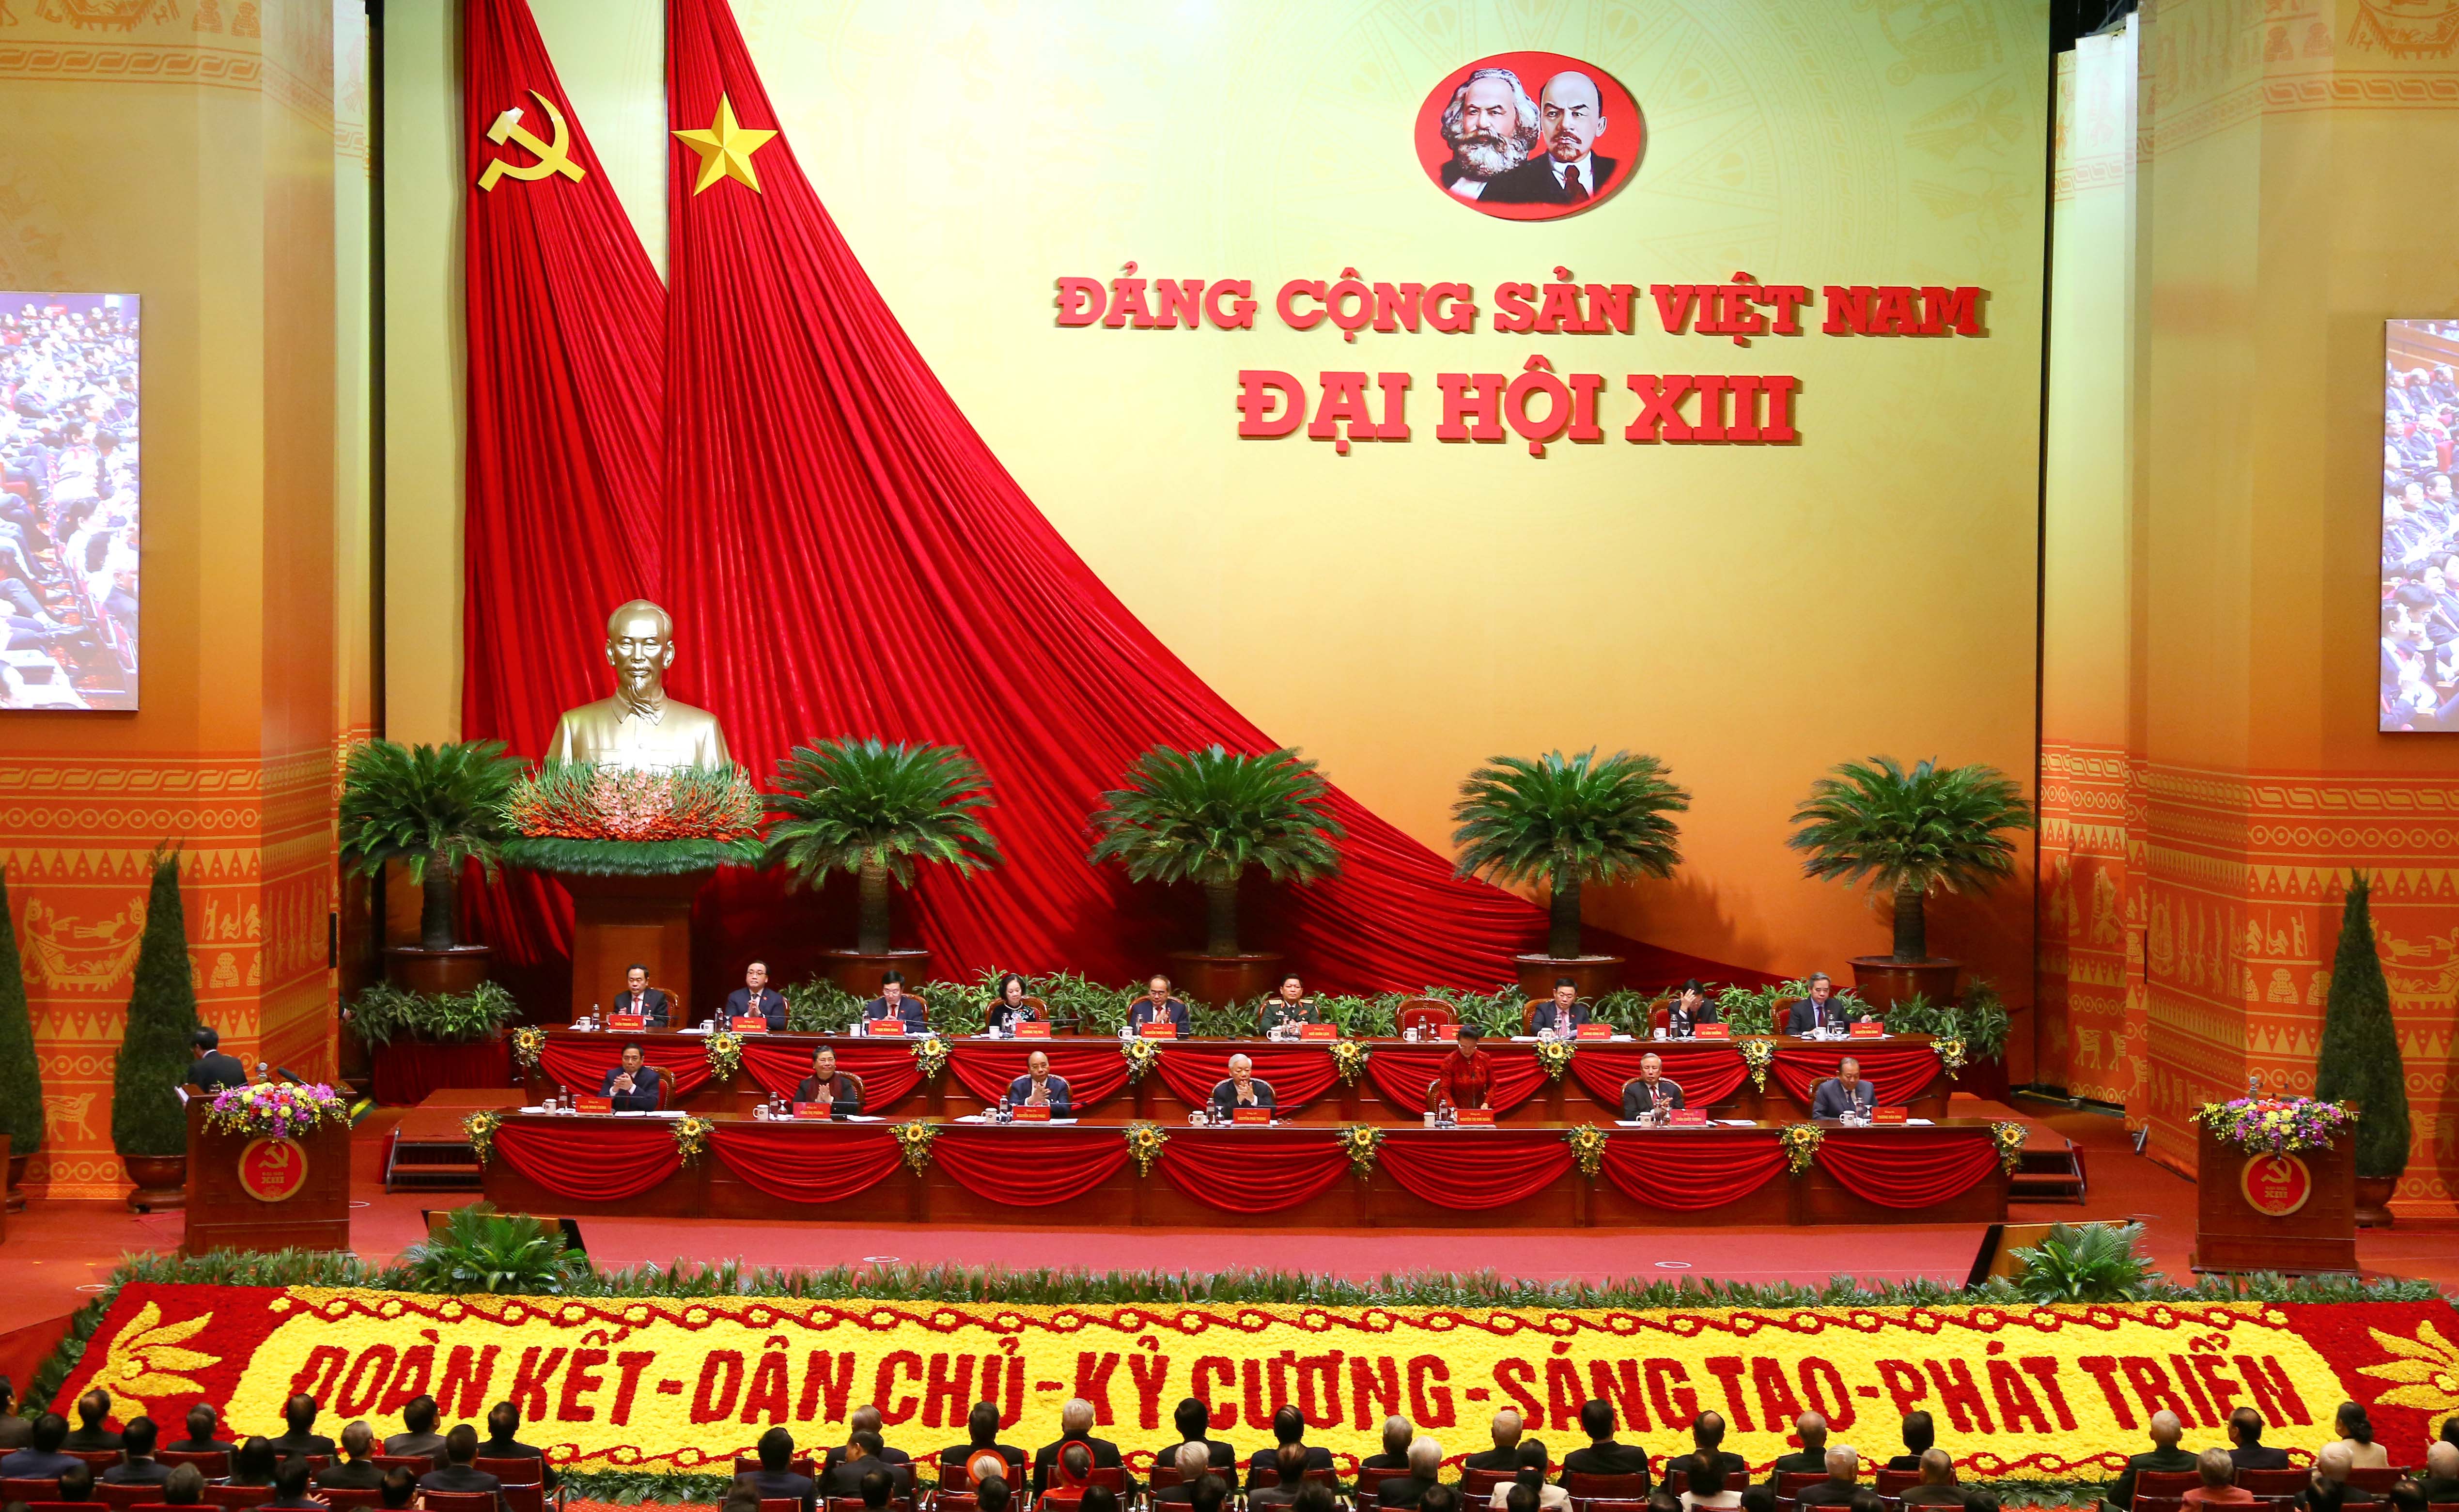 Trải qua 93 mùa xuân với 13 kỳ Đại hội, Đảng Cộng sản Việt Nam đã lãnh đạo và tổ chức mọi thắng lợi của cách mạng Việt Nam